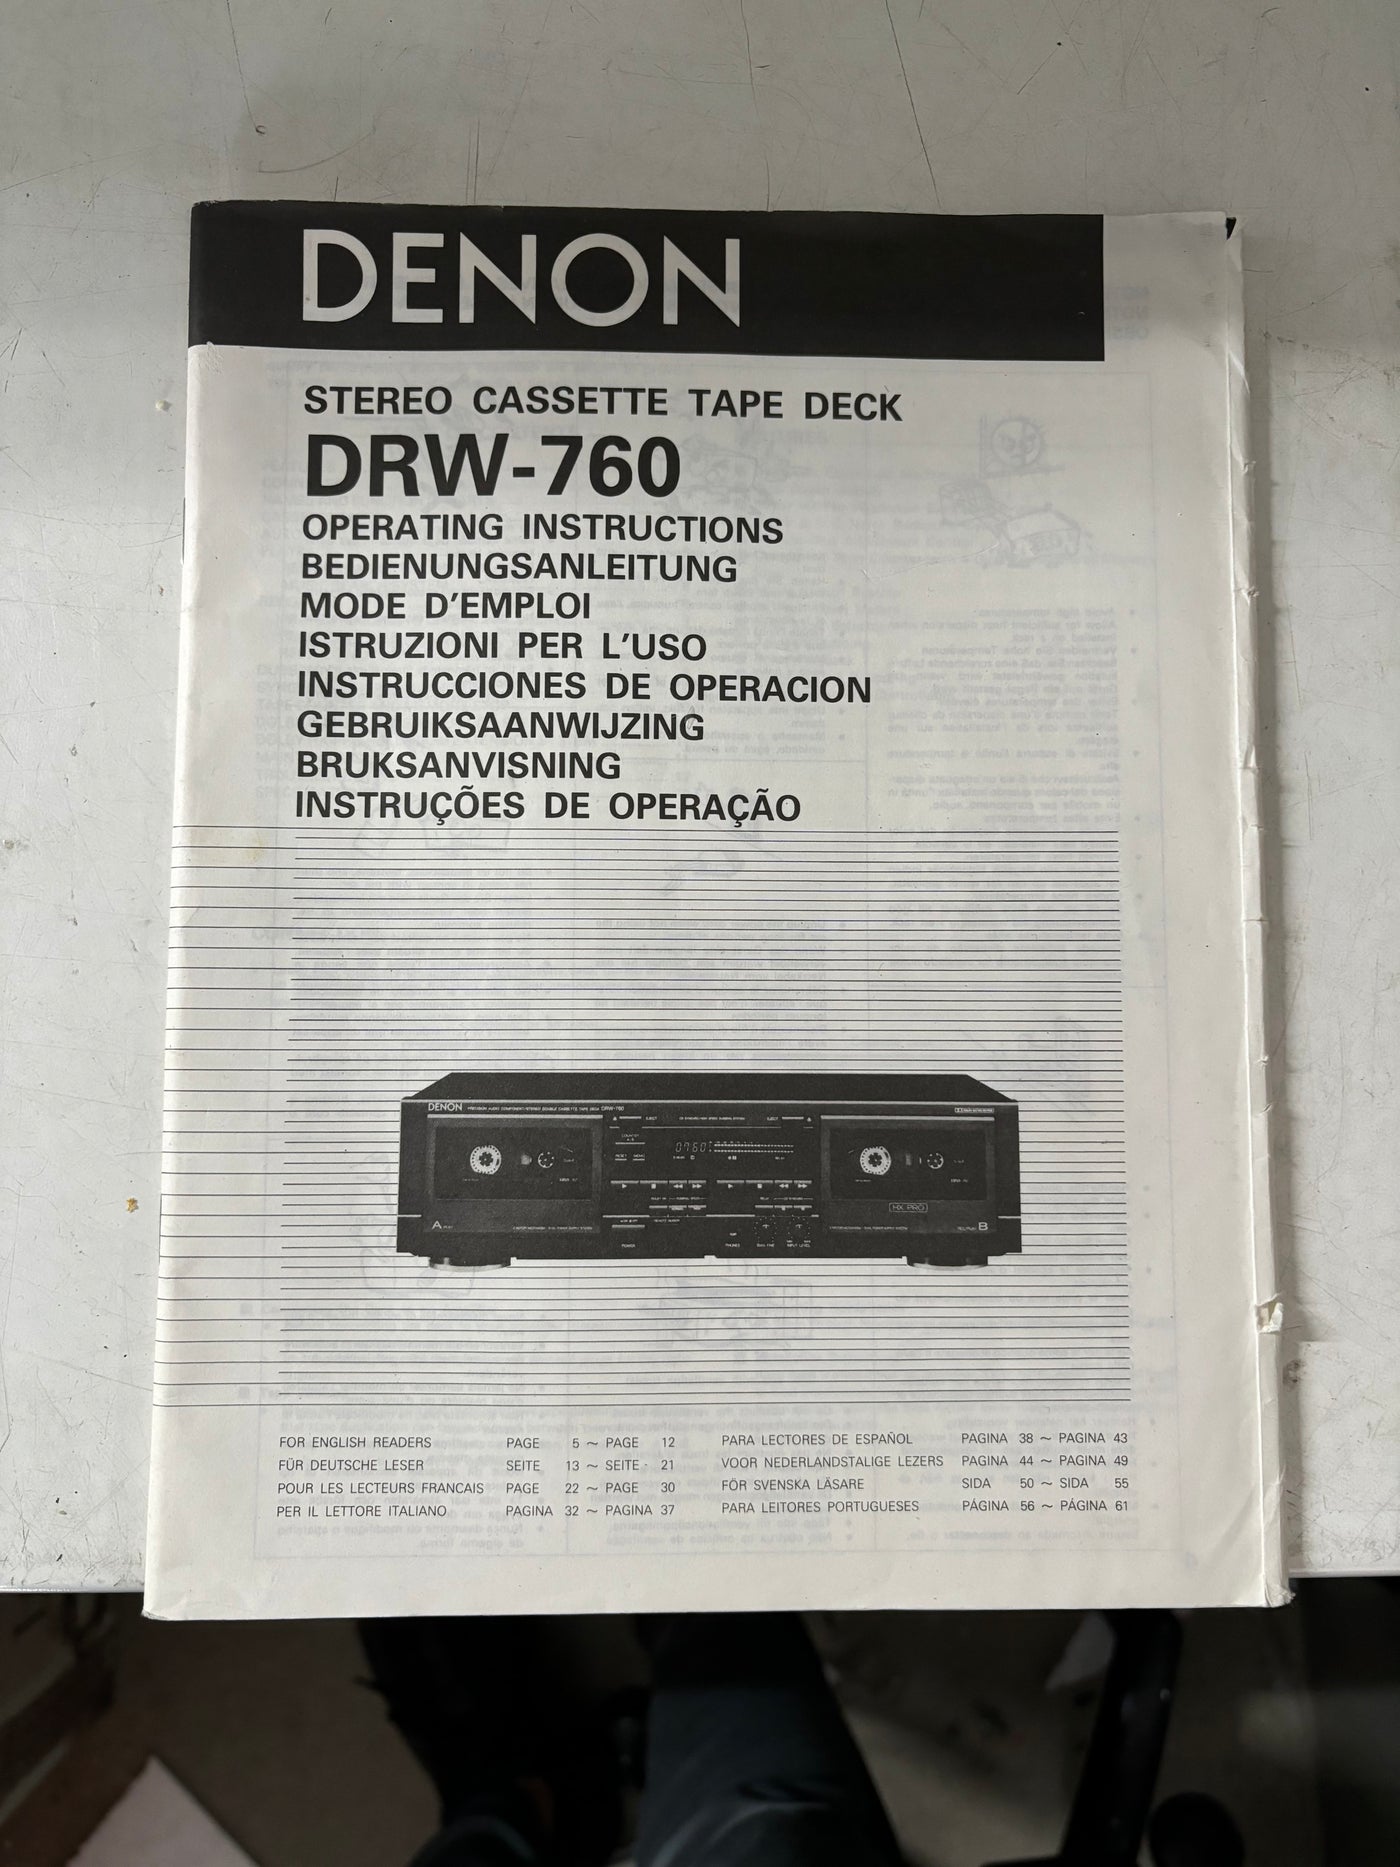 Denon DRW-760 Stereo Cassette Tape Deck User Manual